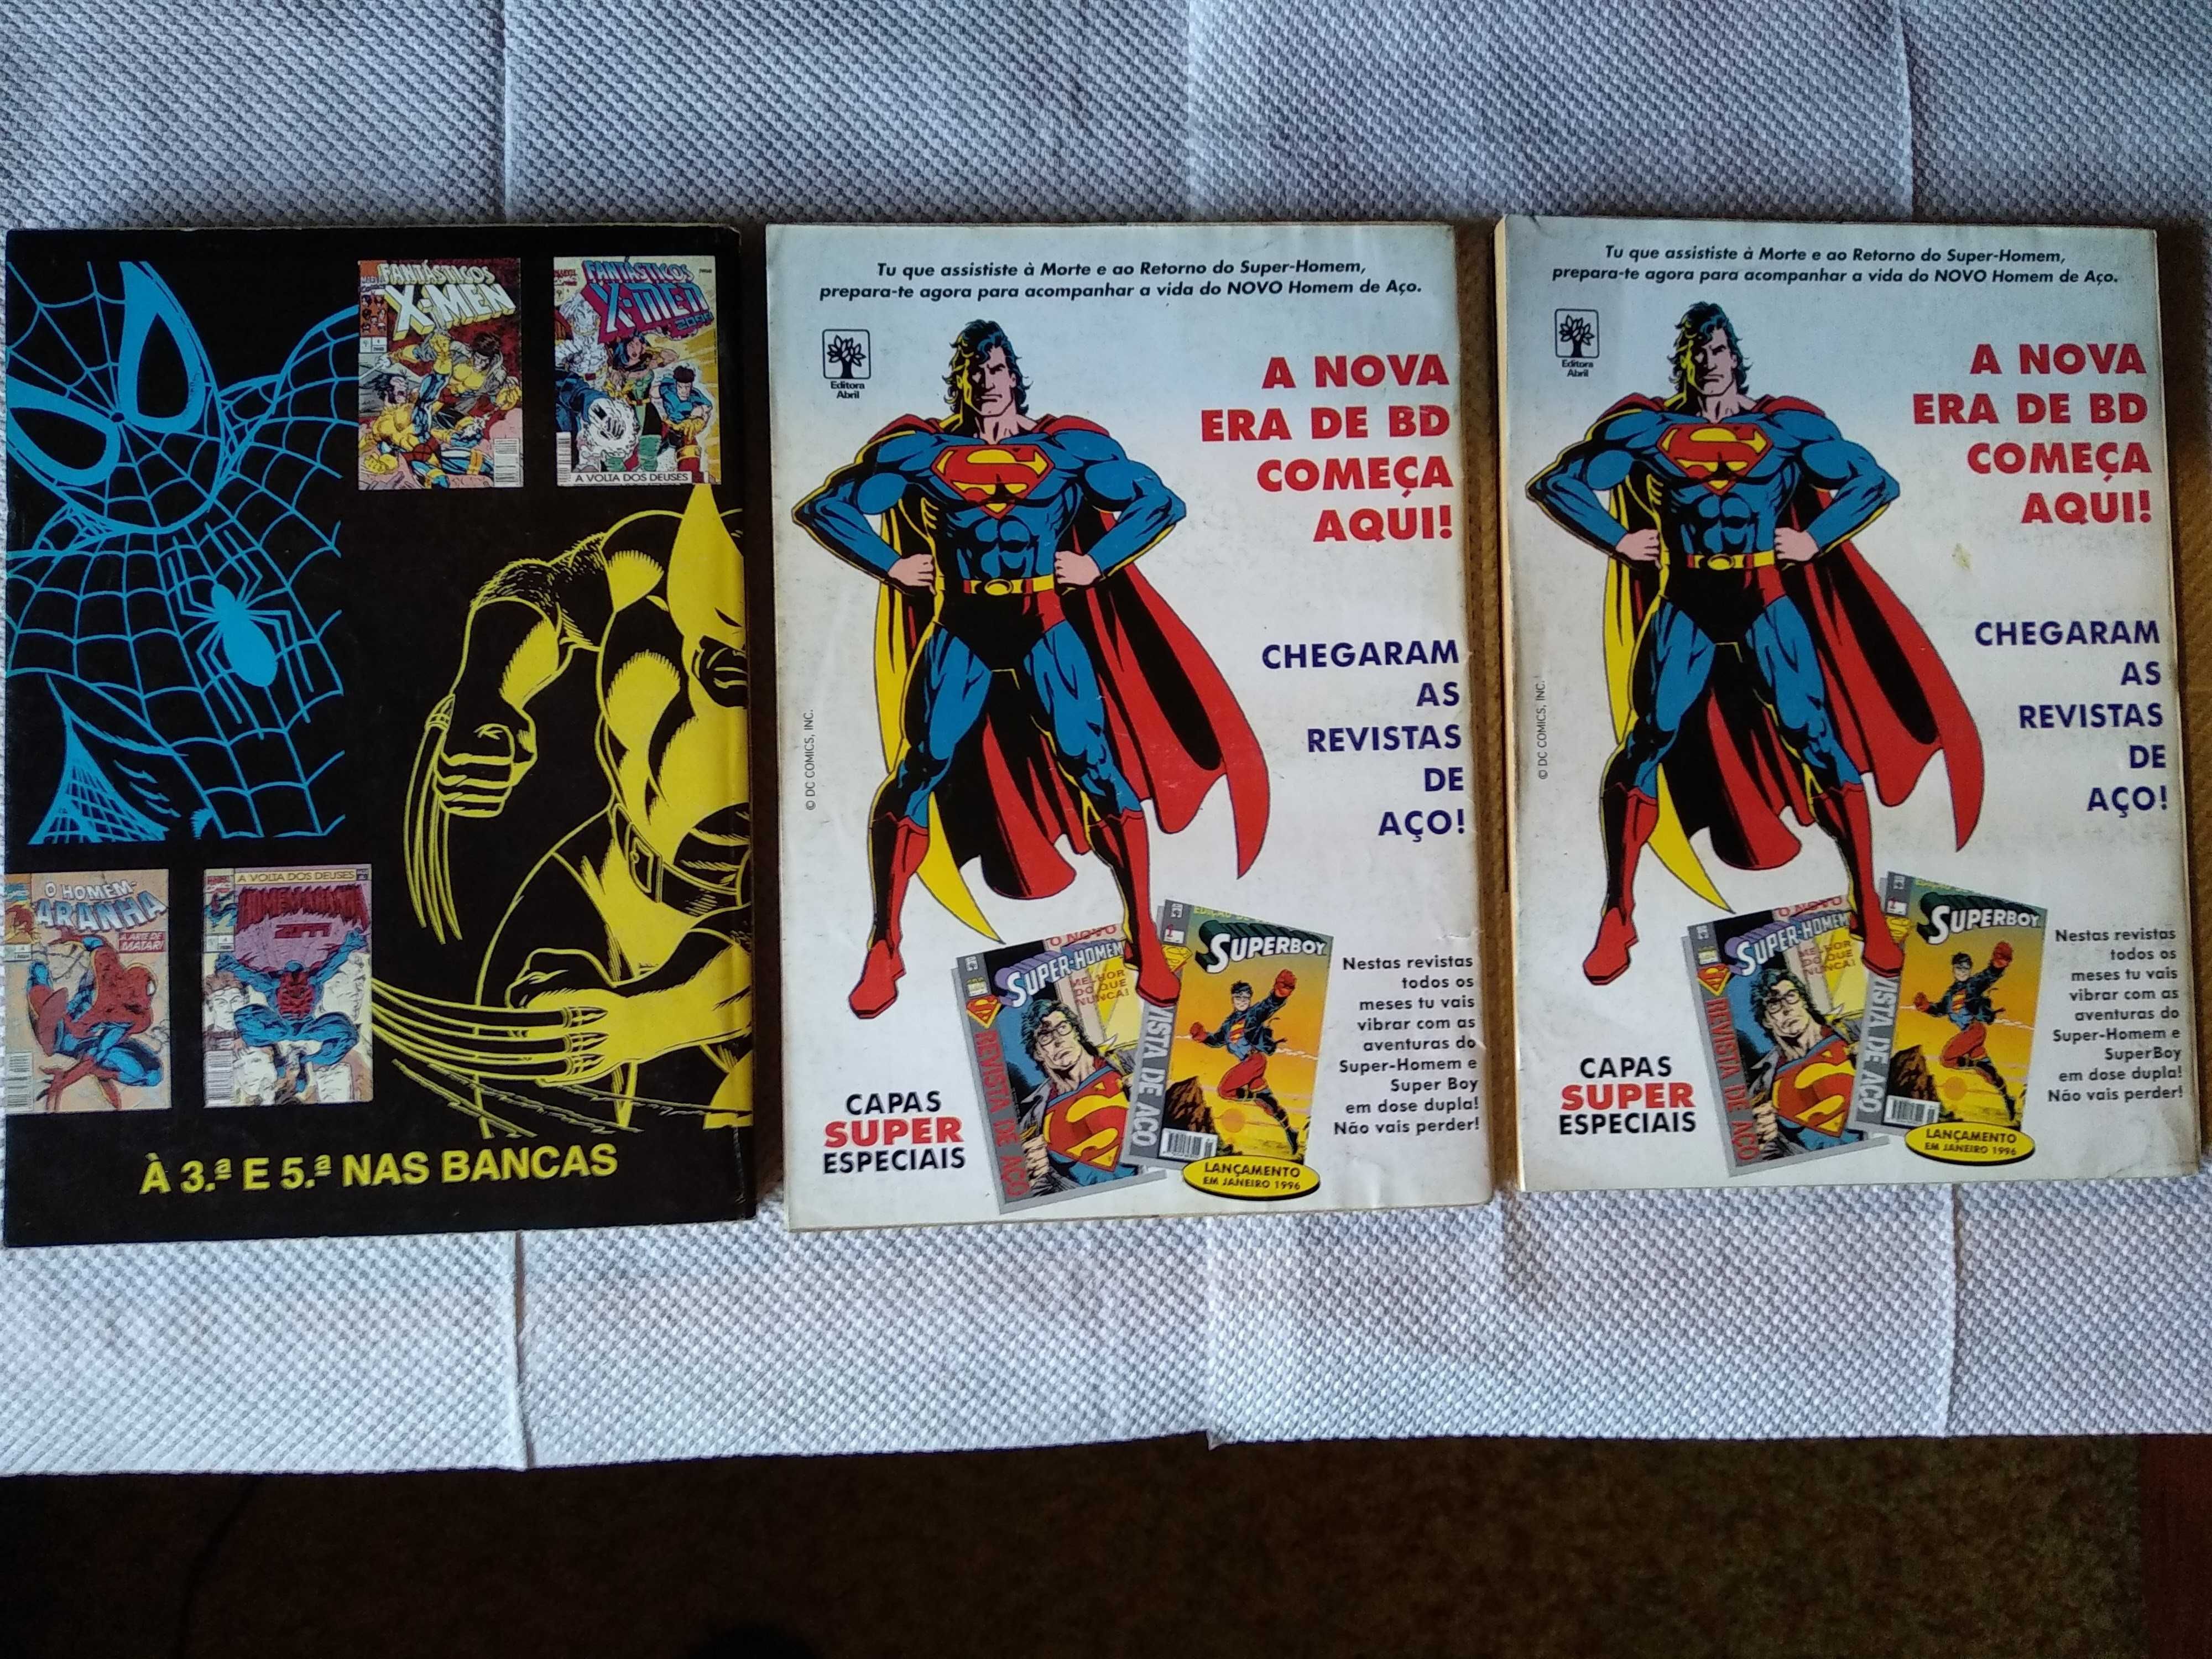 Super-Homem (Superman) Banda Desenhada Editora Abril - 1995 DC Comics